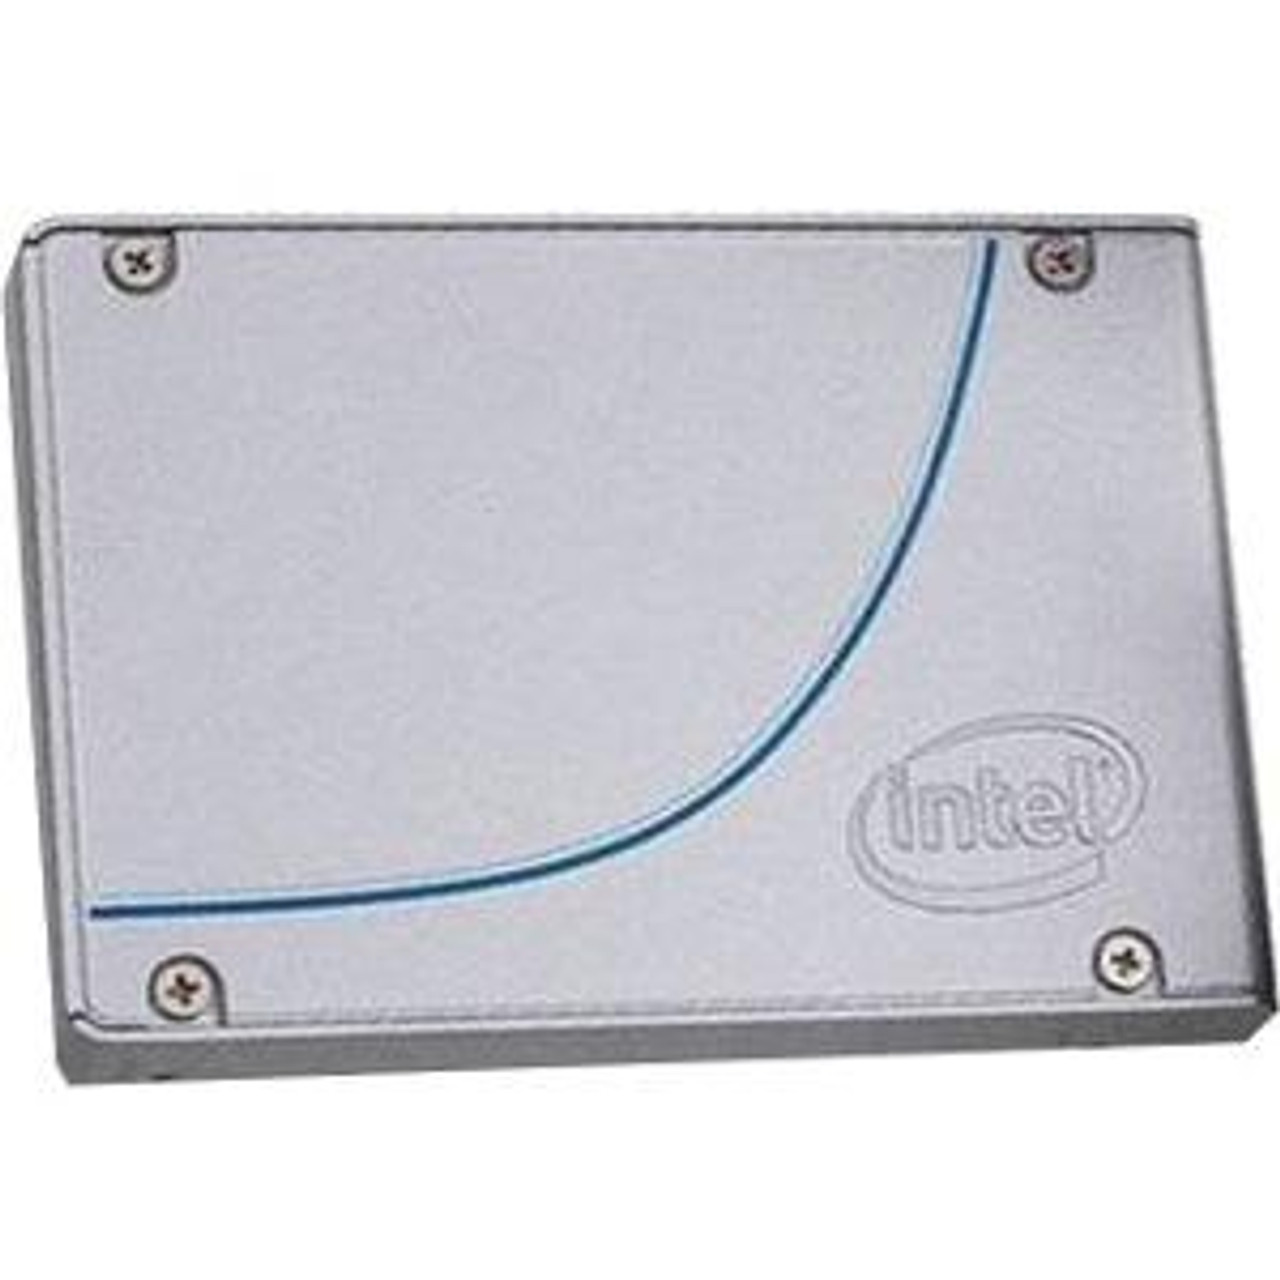 SSDPE2MW012T4M2 Intel 750 Series 1.2TB MLC PCI Express 3.0 x4 NVMe U.2 2.5-inch Internal Solid State Drive (SSD)